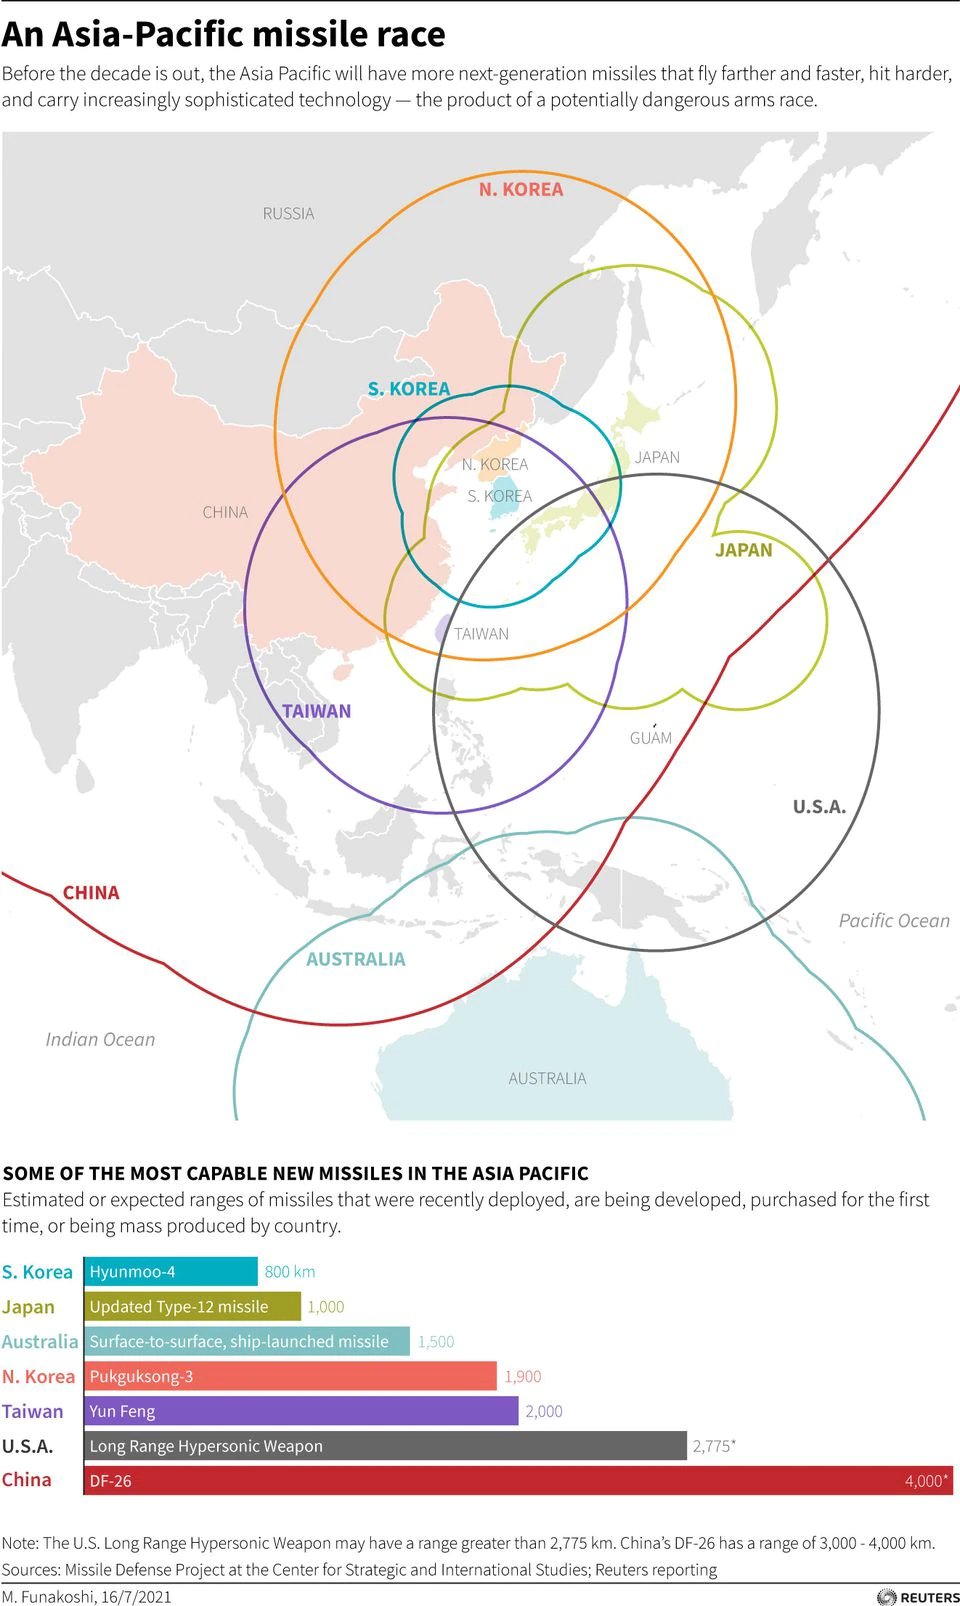 Asya-Pasifik'te Silahlanma Yarışı